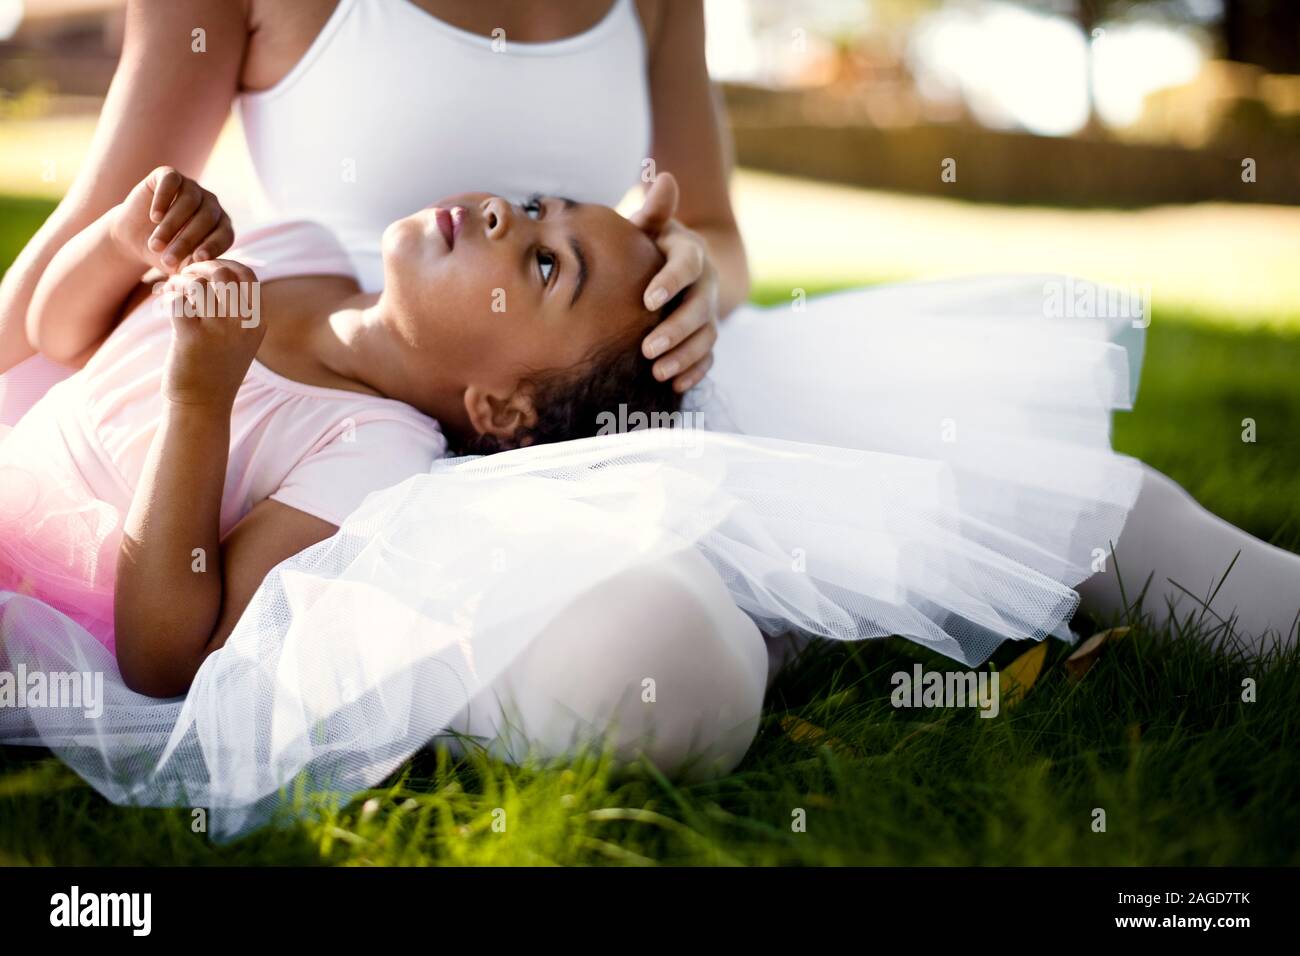 Junges Mädchen und ihre Mutter tragen Ballett Bekleidung Entspannung auf einem Rasen Stockfoto